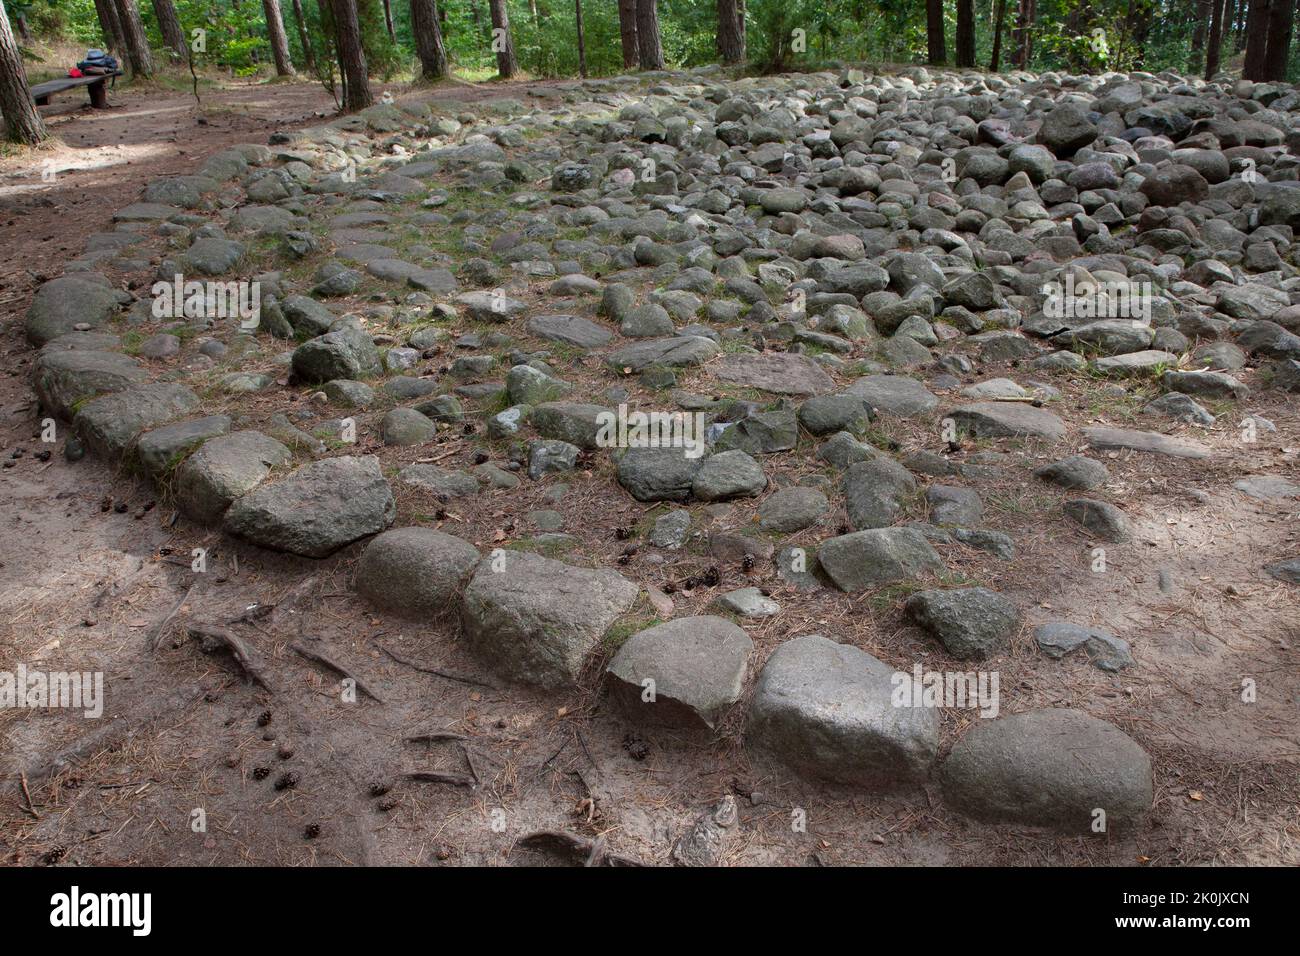 Cercles de pierre mégalithique en Węsiory Pologne - Kamienne kręgi Węsiory Polska Banque D'Images